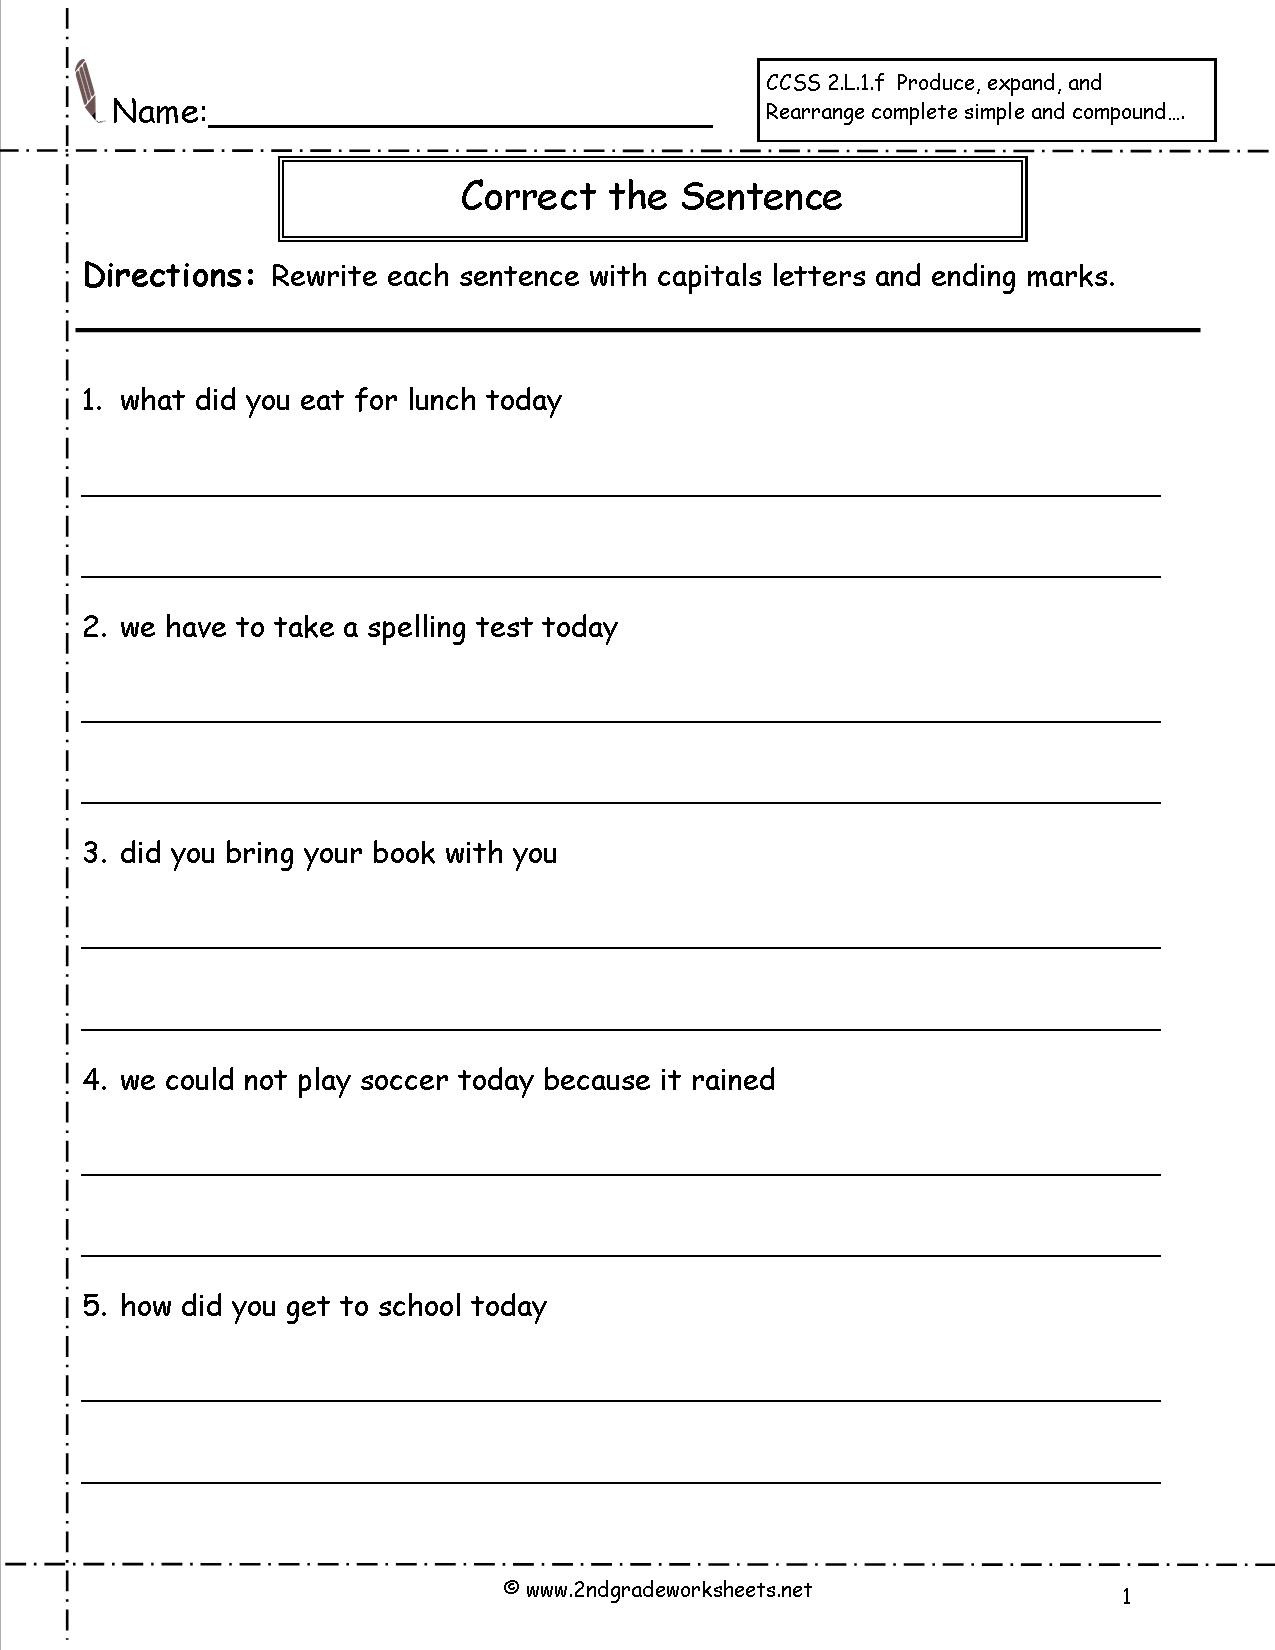 Complete Sentences Worksheets 2nd Grade Second Grade Sentences Worksheets Ccss 2 L 1 F Worksheets